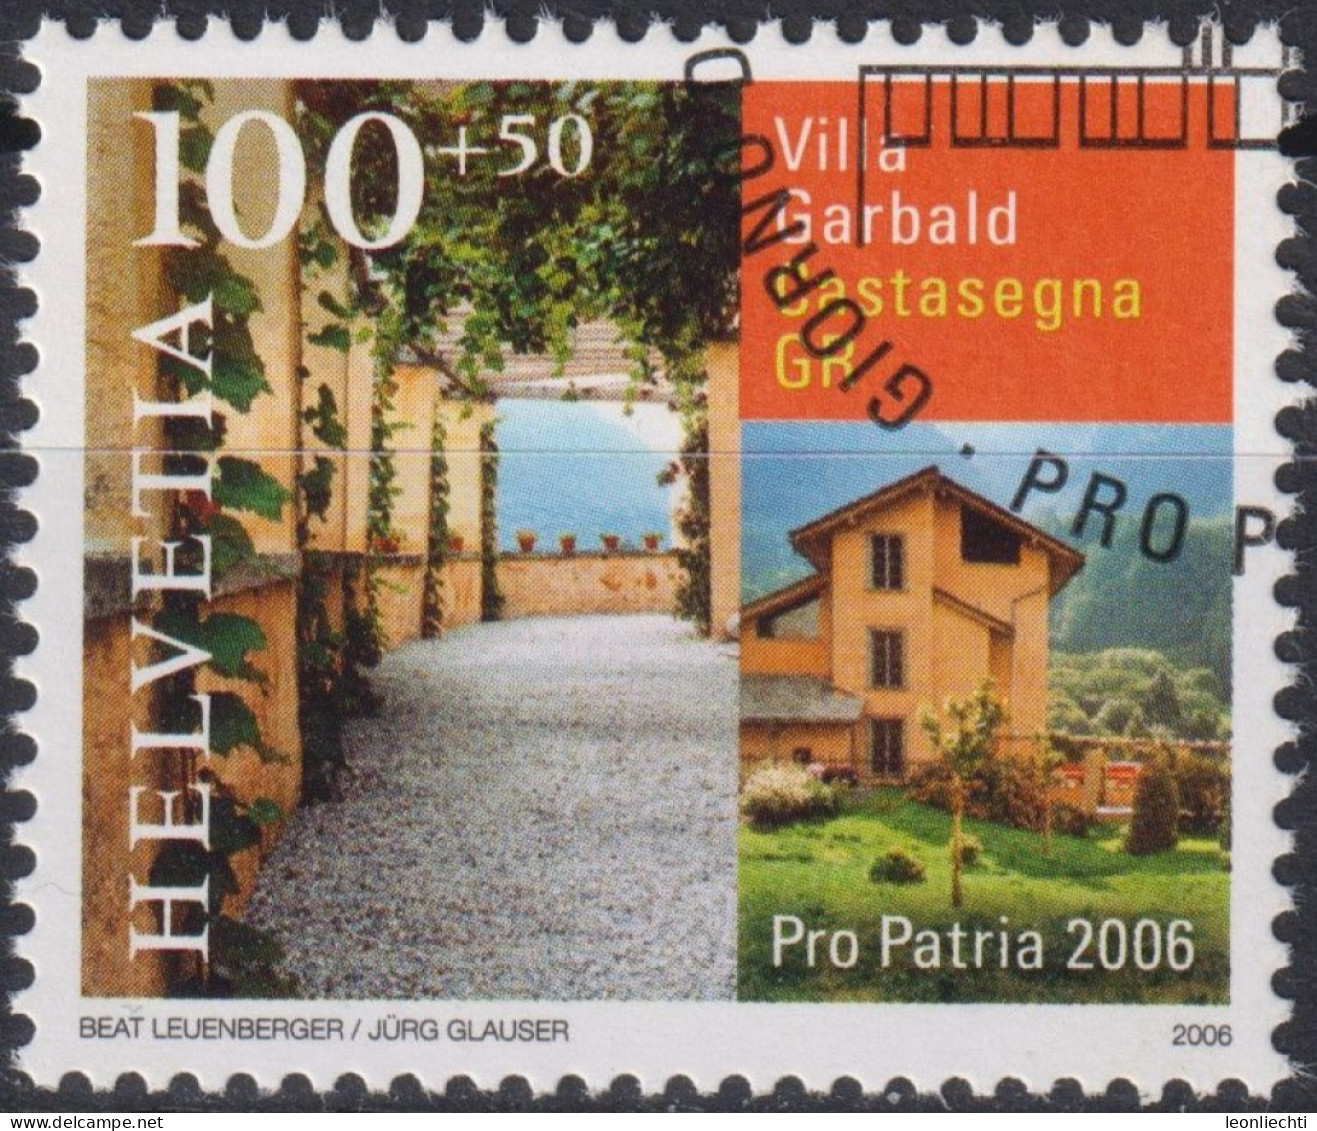 2006 Schweiz Pro Patria, Villa Garbald, Castasegna GR ⵙ Zum:CH B294, Mi:CH 1963, Yt:CH 1890 - Used Stamps